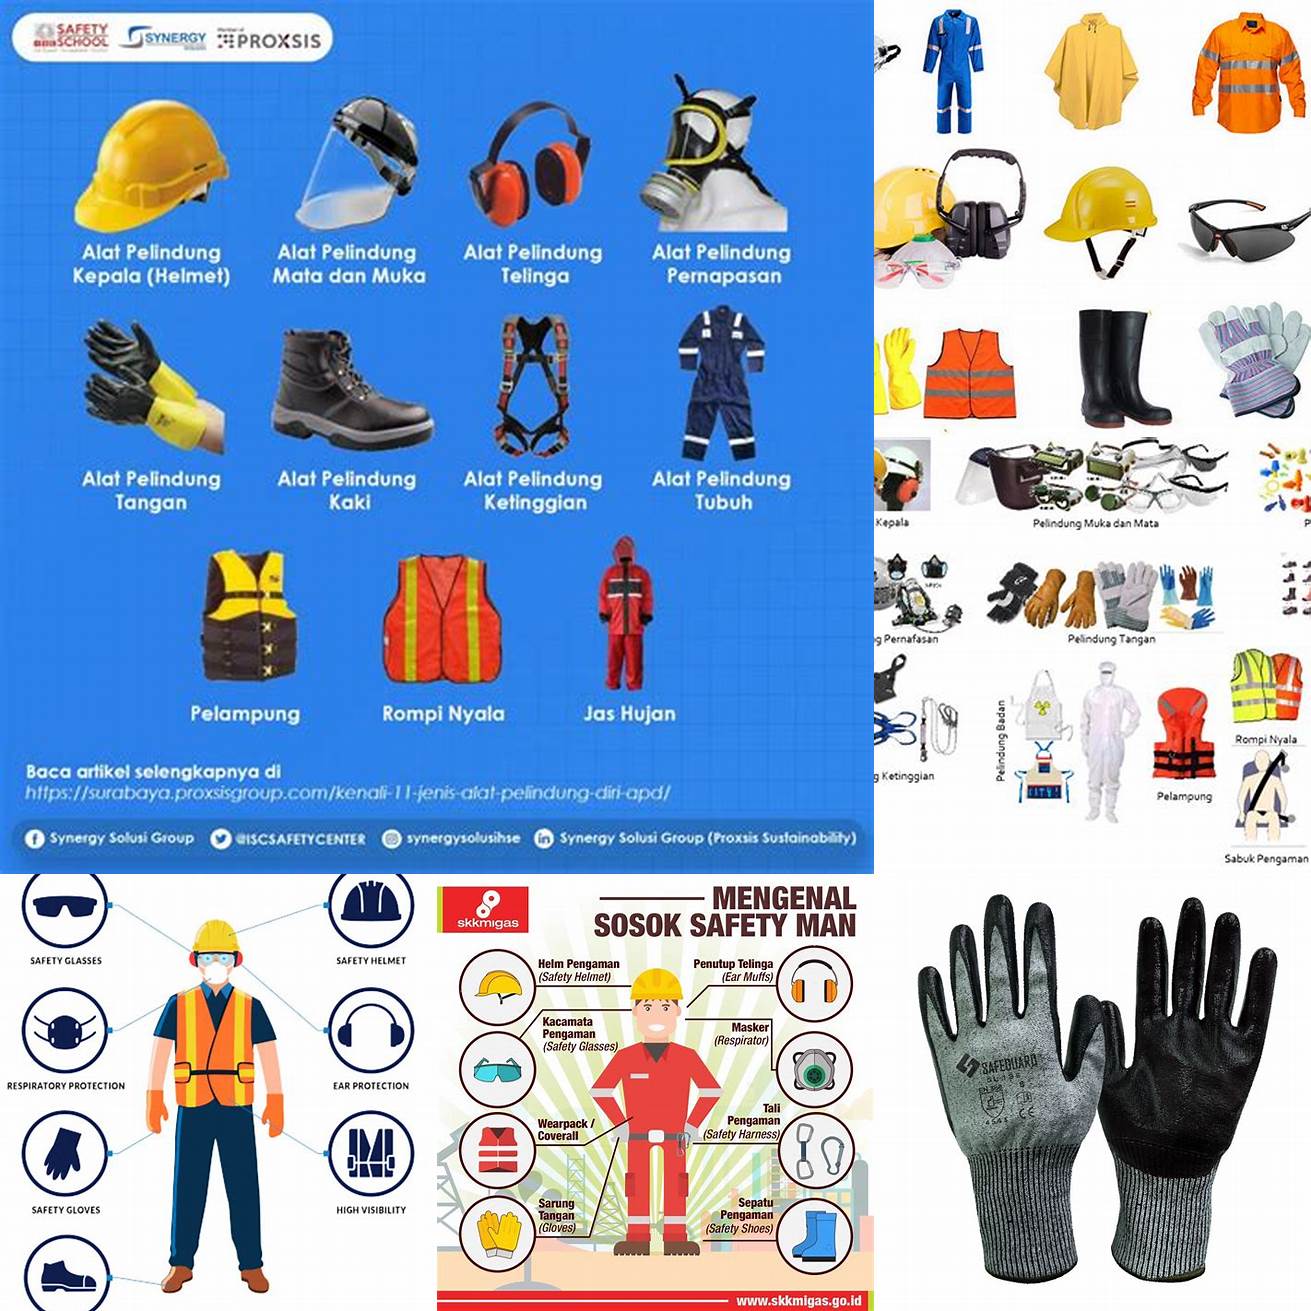 Kenakan peralatan pelindung seperti sarung tangan jika bekerja dengan alat atau benda berbahaya